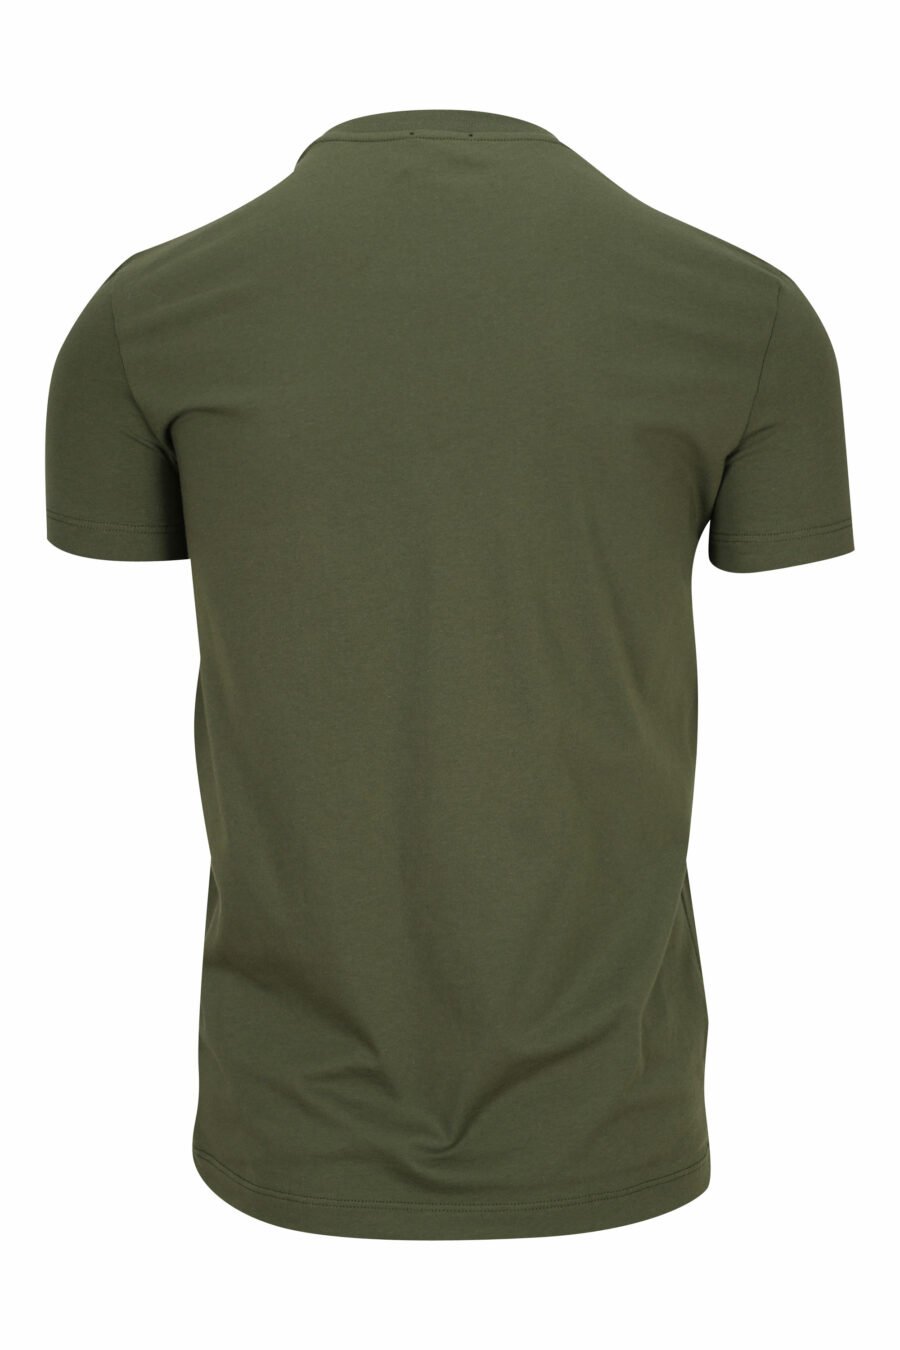 T-shirt vert militaire avec sous-vêtements blancs minilogue - 8032674811622 1